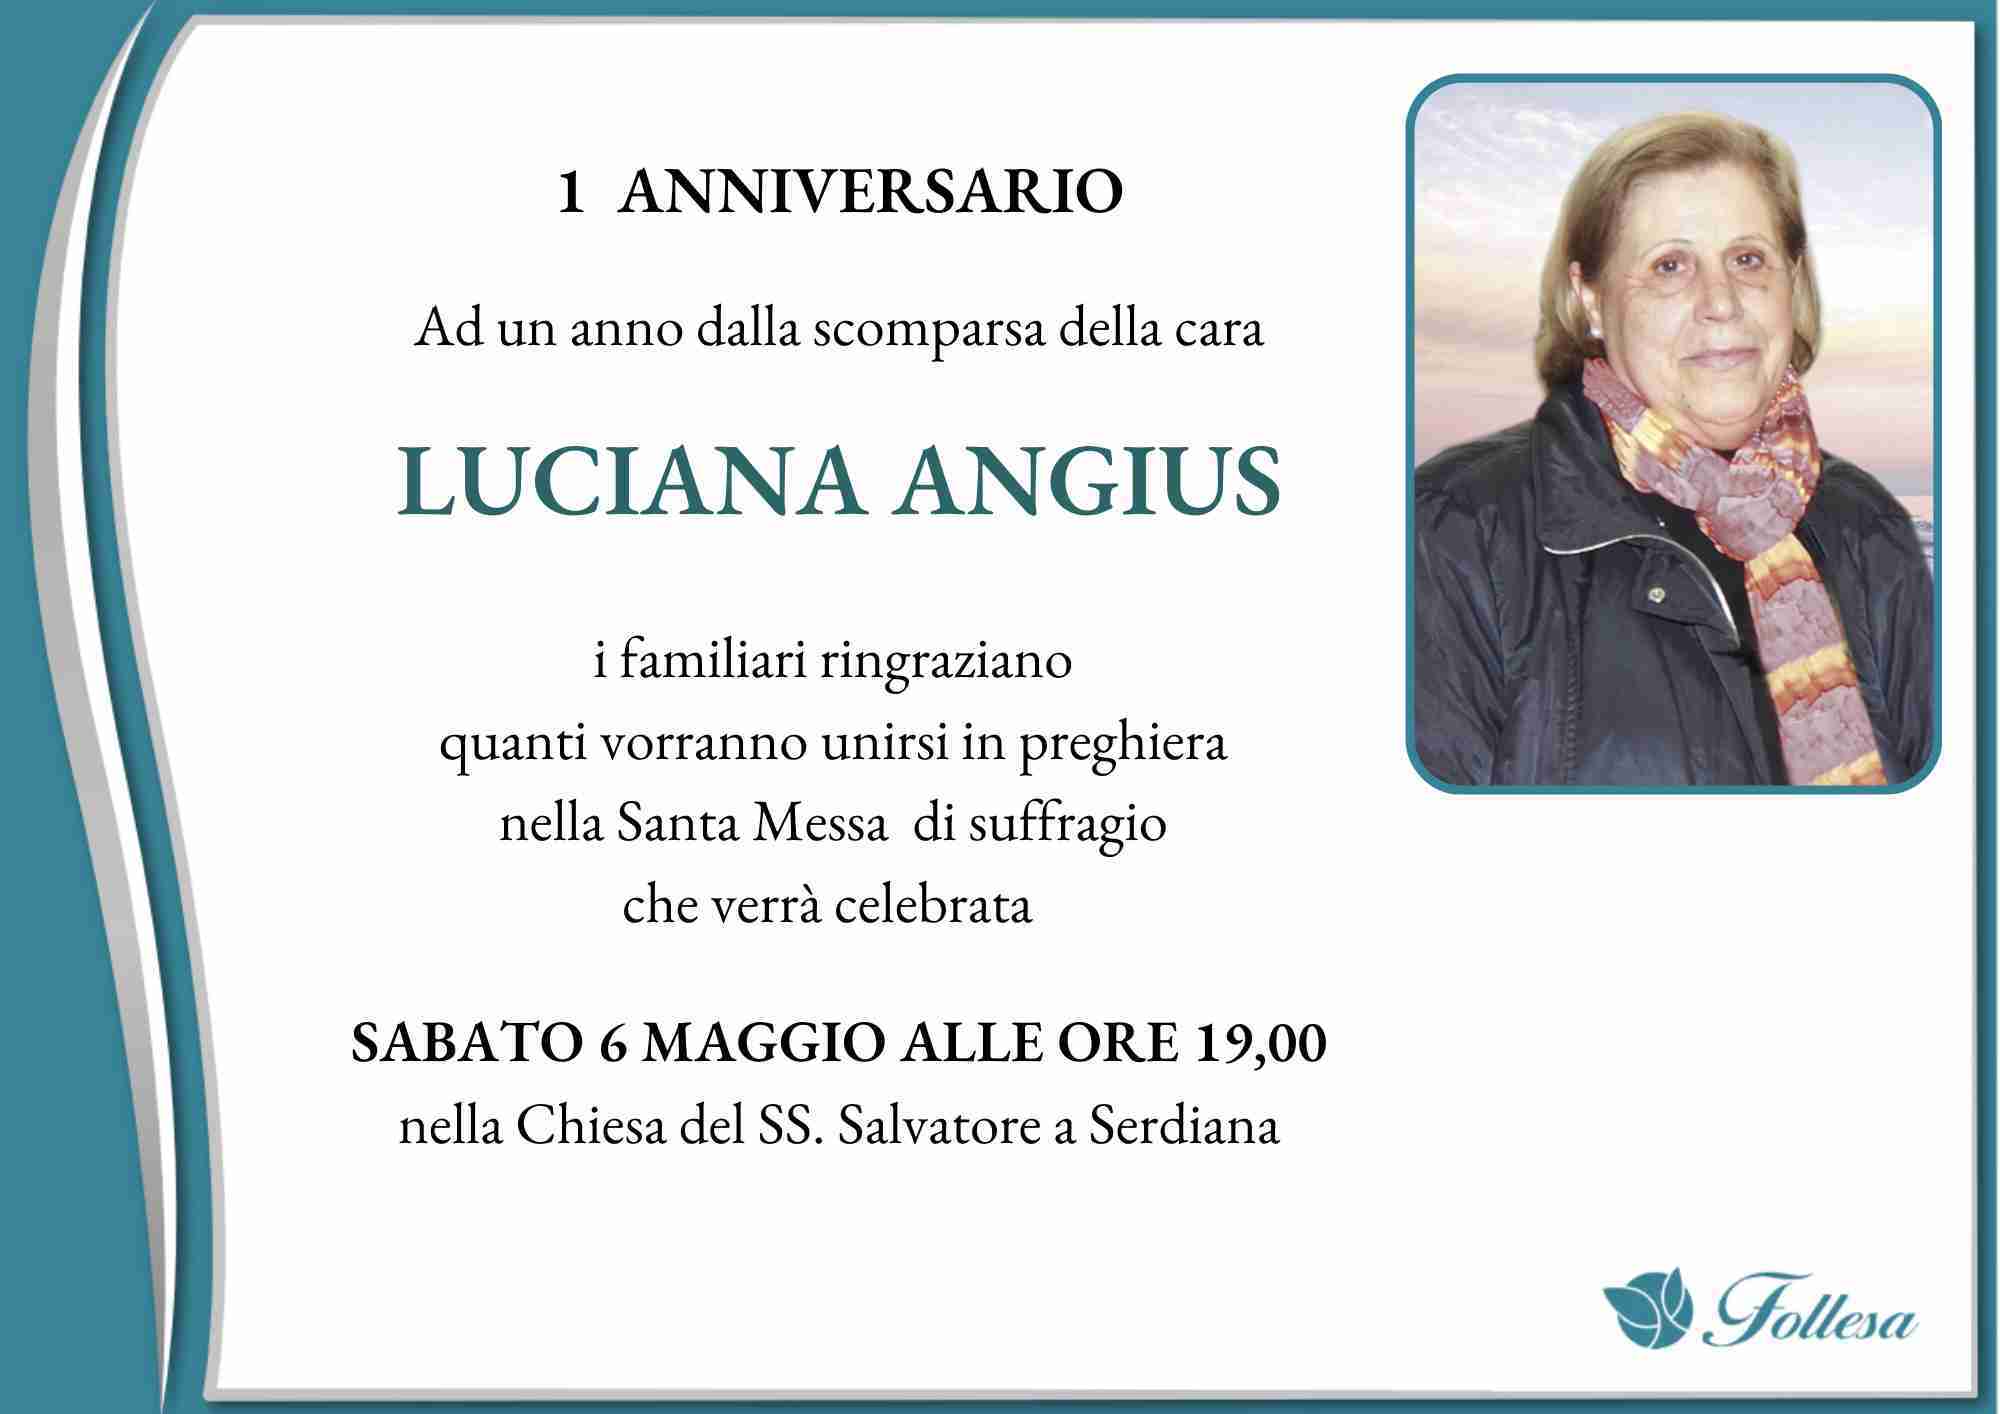 Luciana Angius